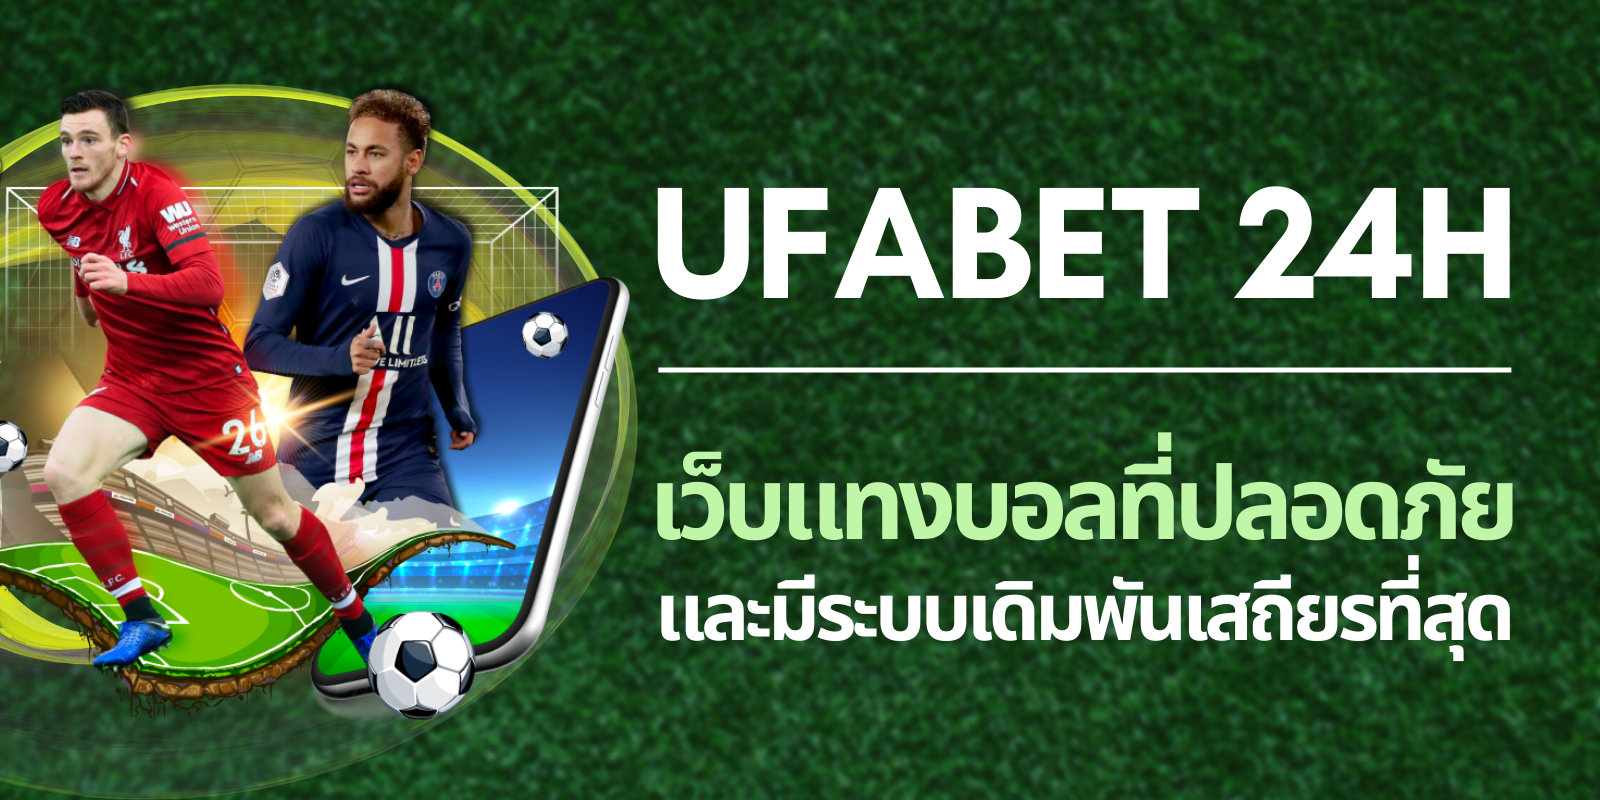 ufabet 24h เว็บแทงบอลที่ปลอดภัย และมีระบบเดิมพันเสถียรที่สุด